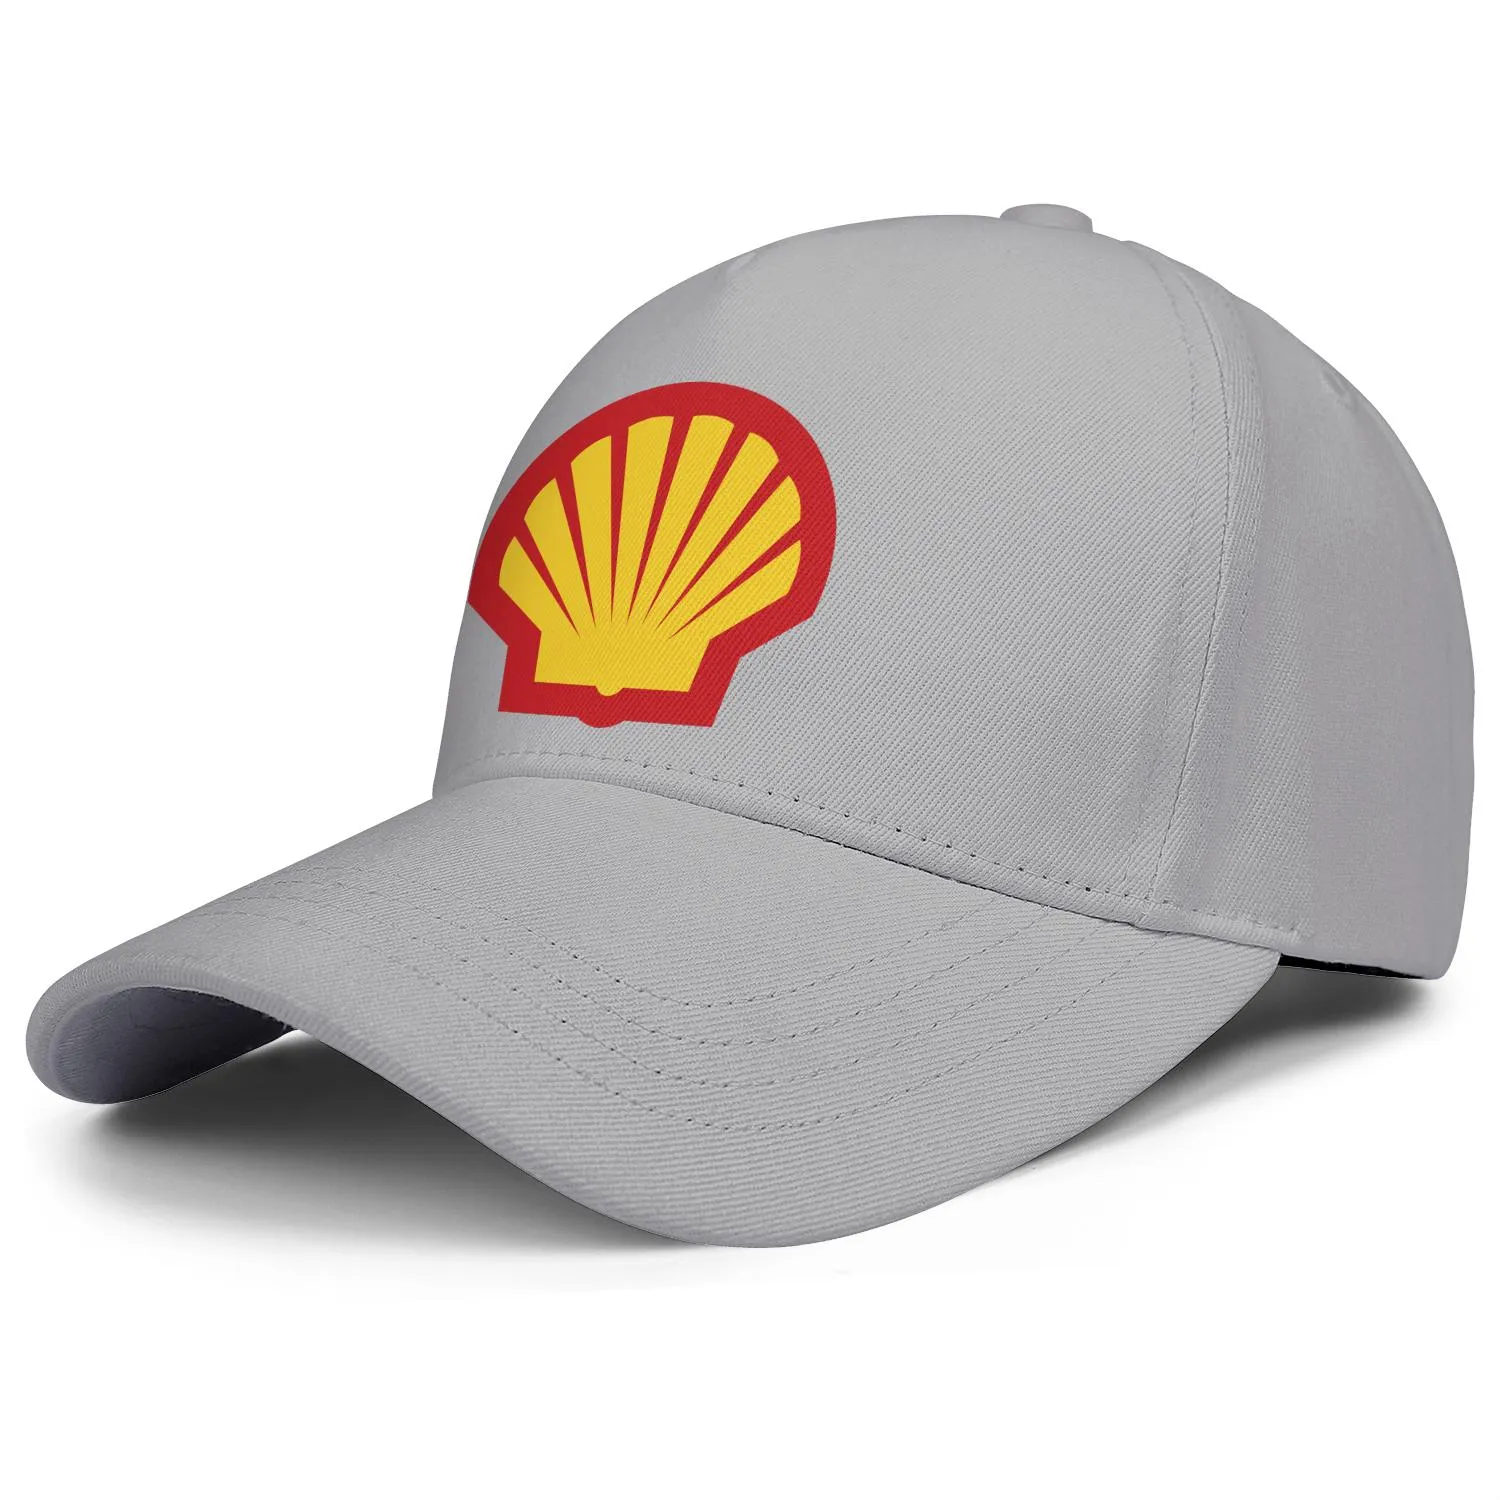 Logo de la station-service à essence Shell pour hommes et femmes casquette de camionneur réglable équipée vintage mignon baseballhats localisateur d'essence symbo301e